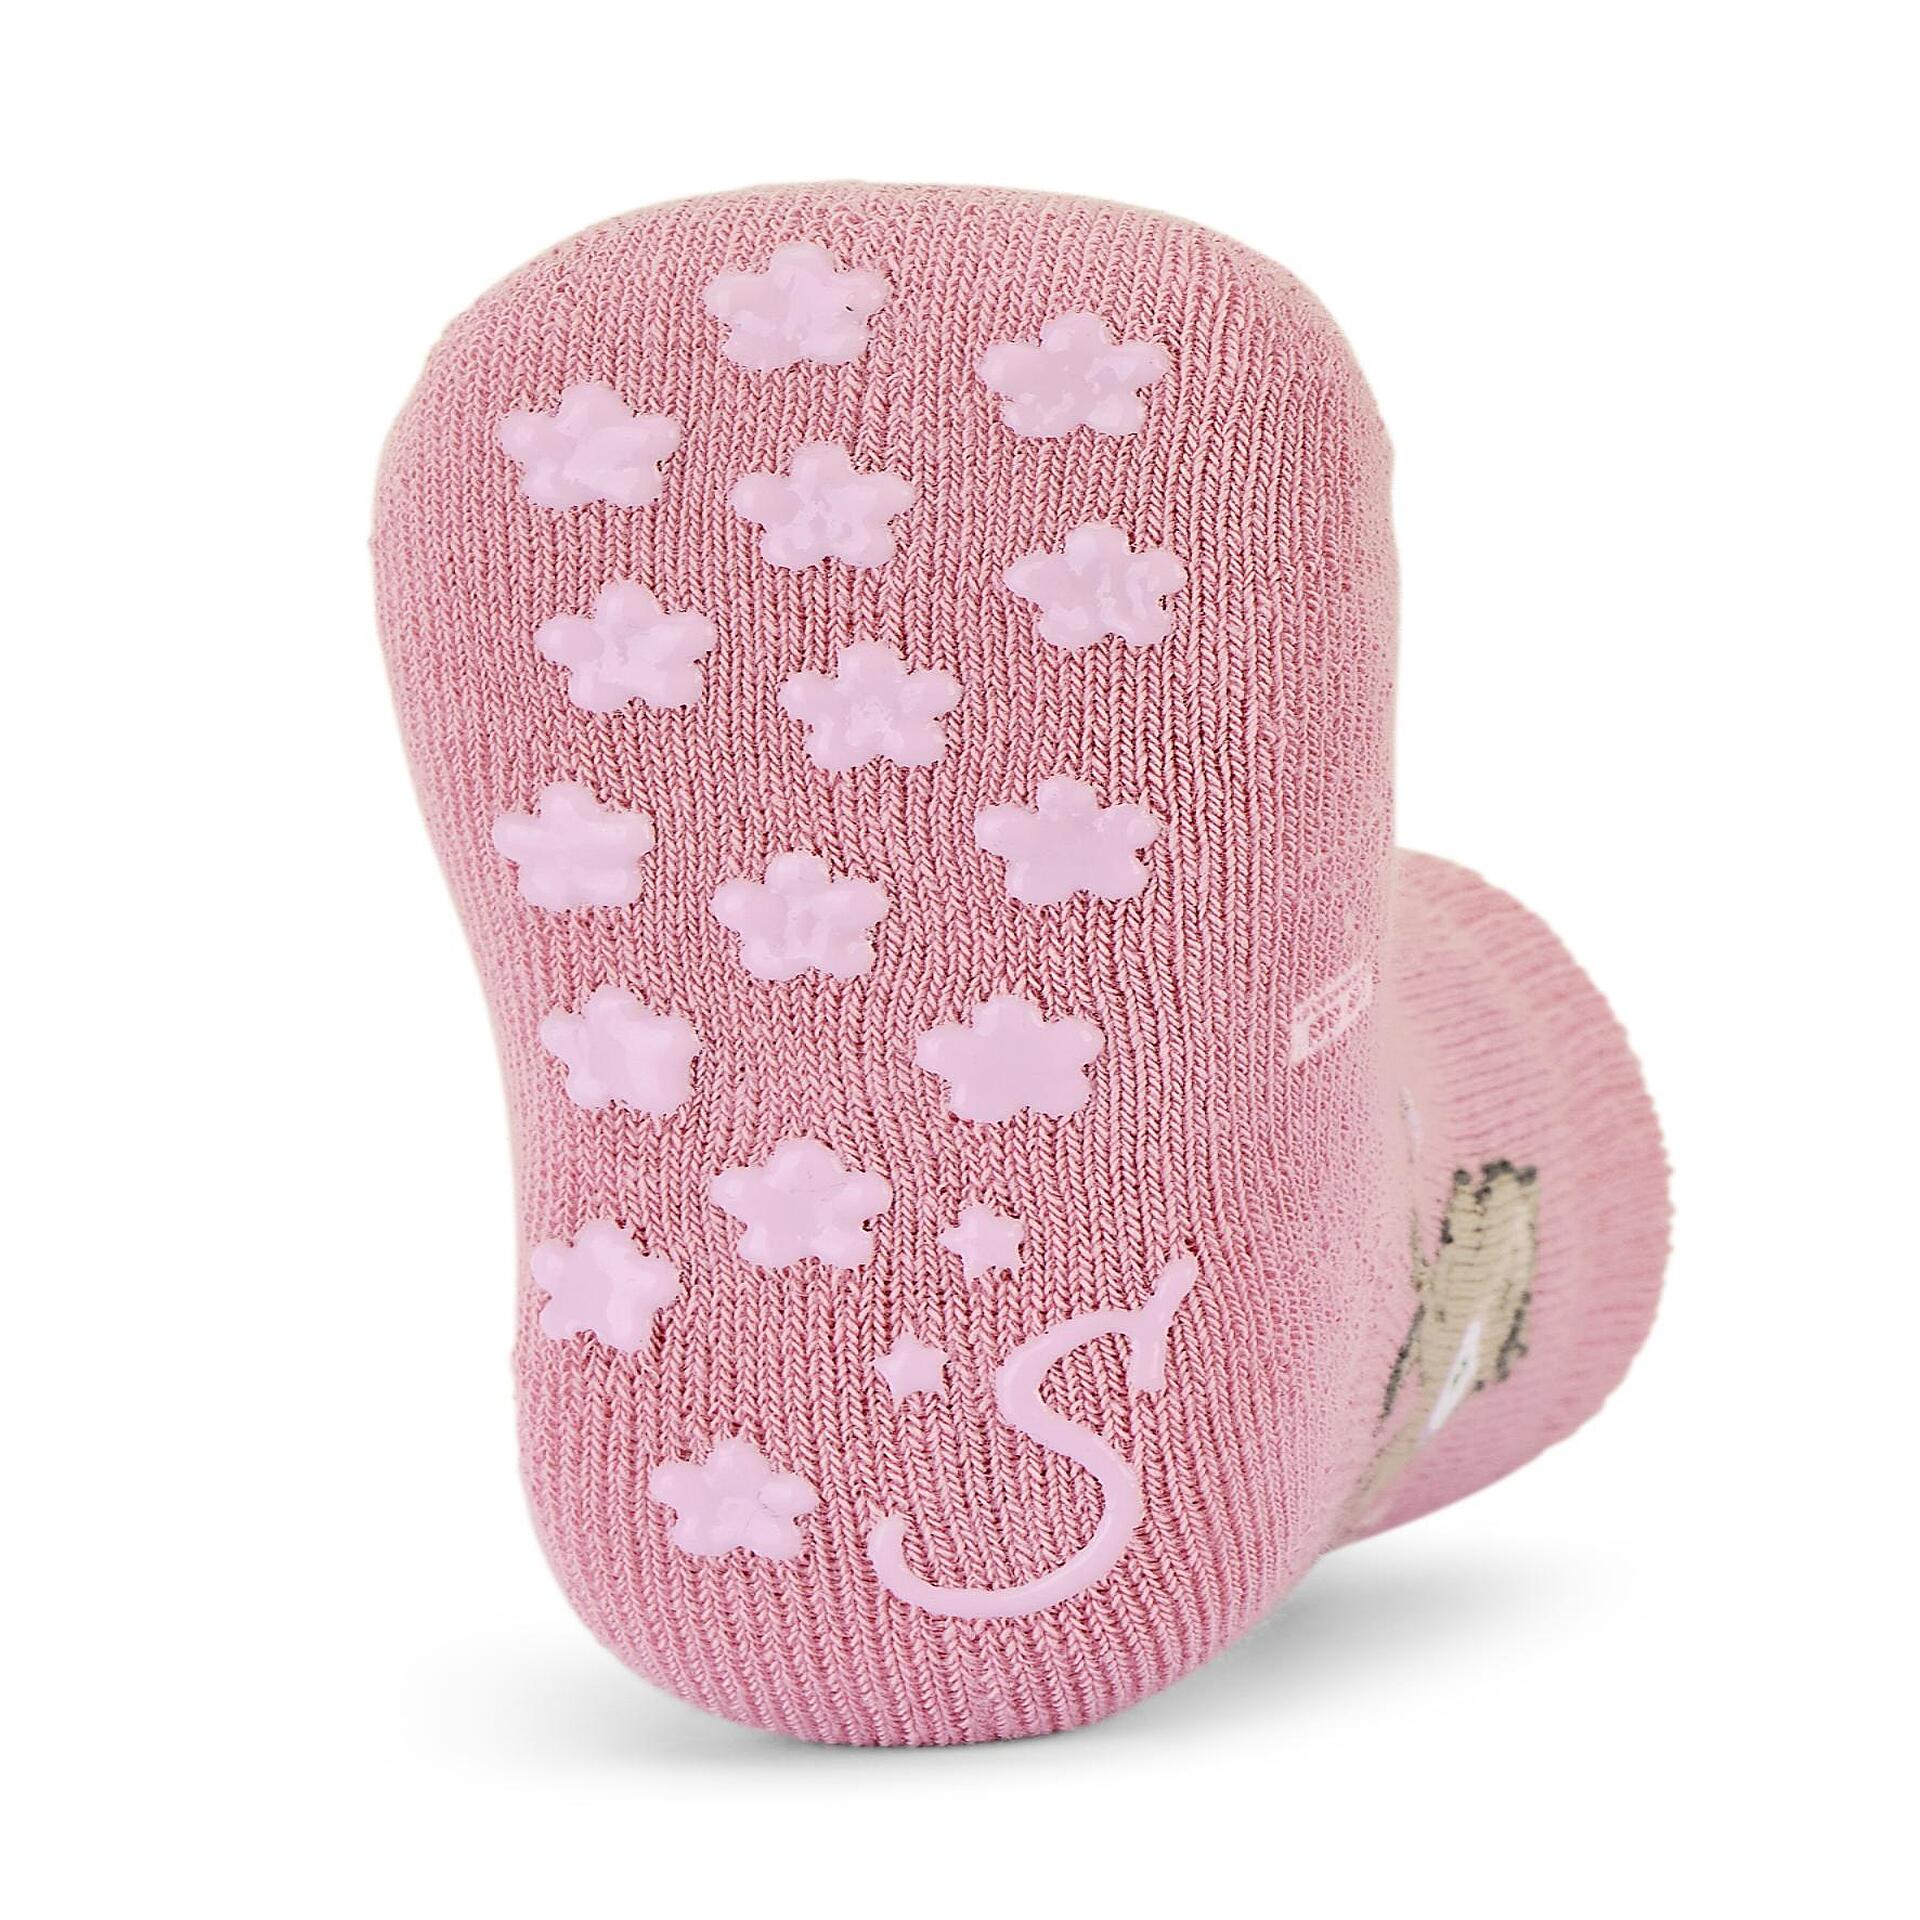 Детски чорапи за пълзене за момиче - 2 чифта-Copy